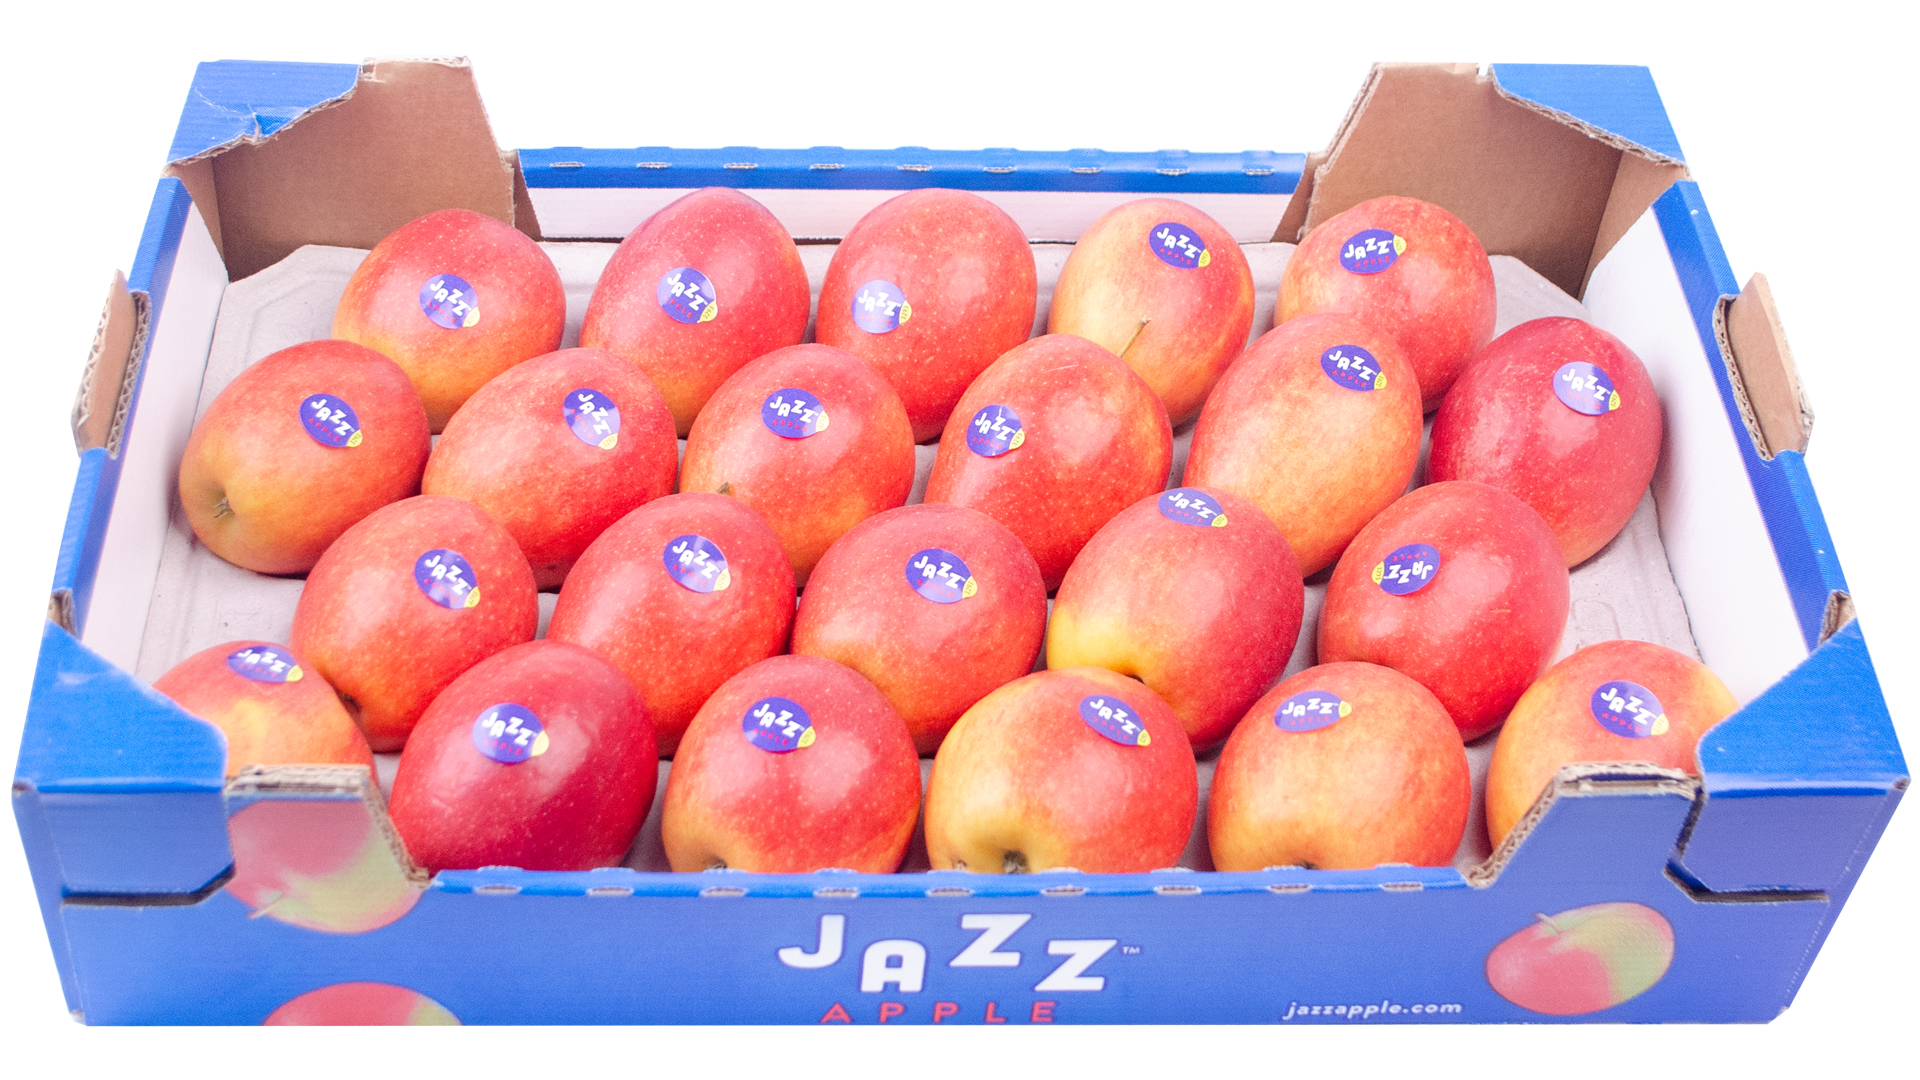 Apfel Jazz-Kiste